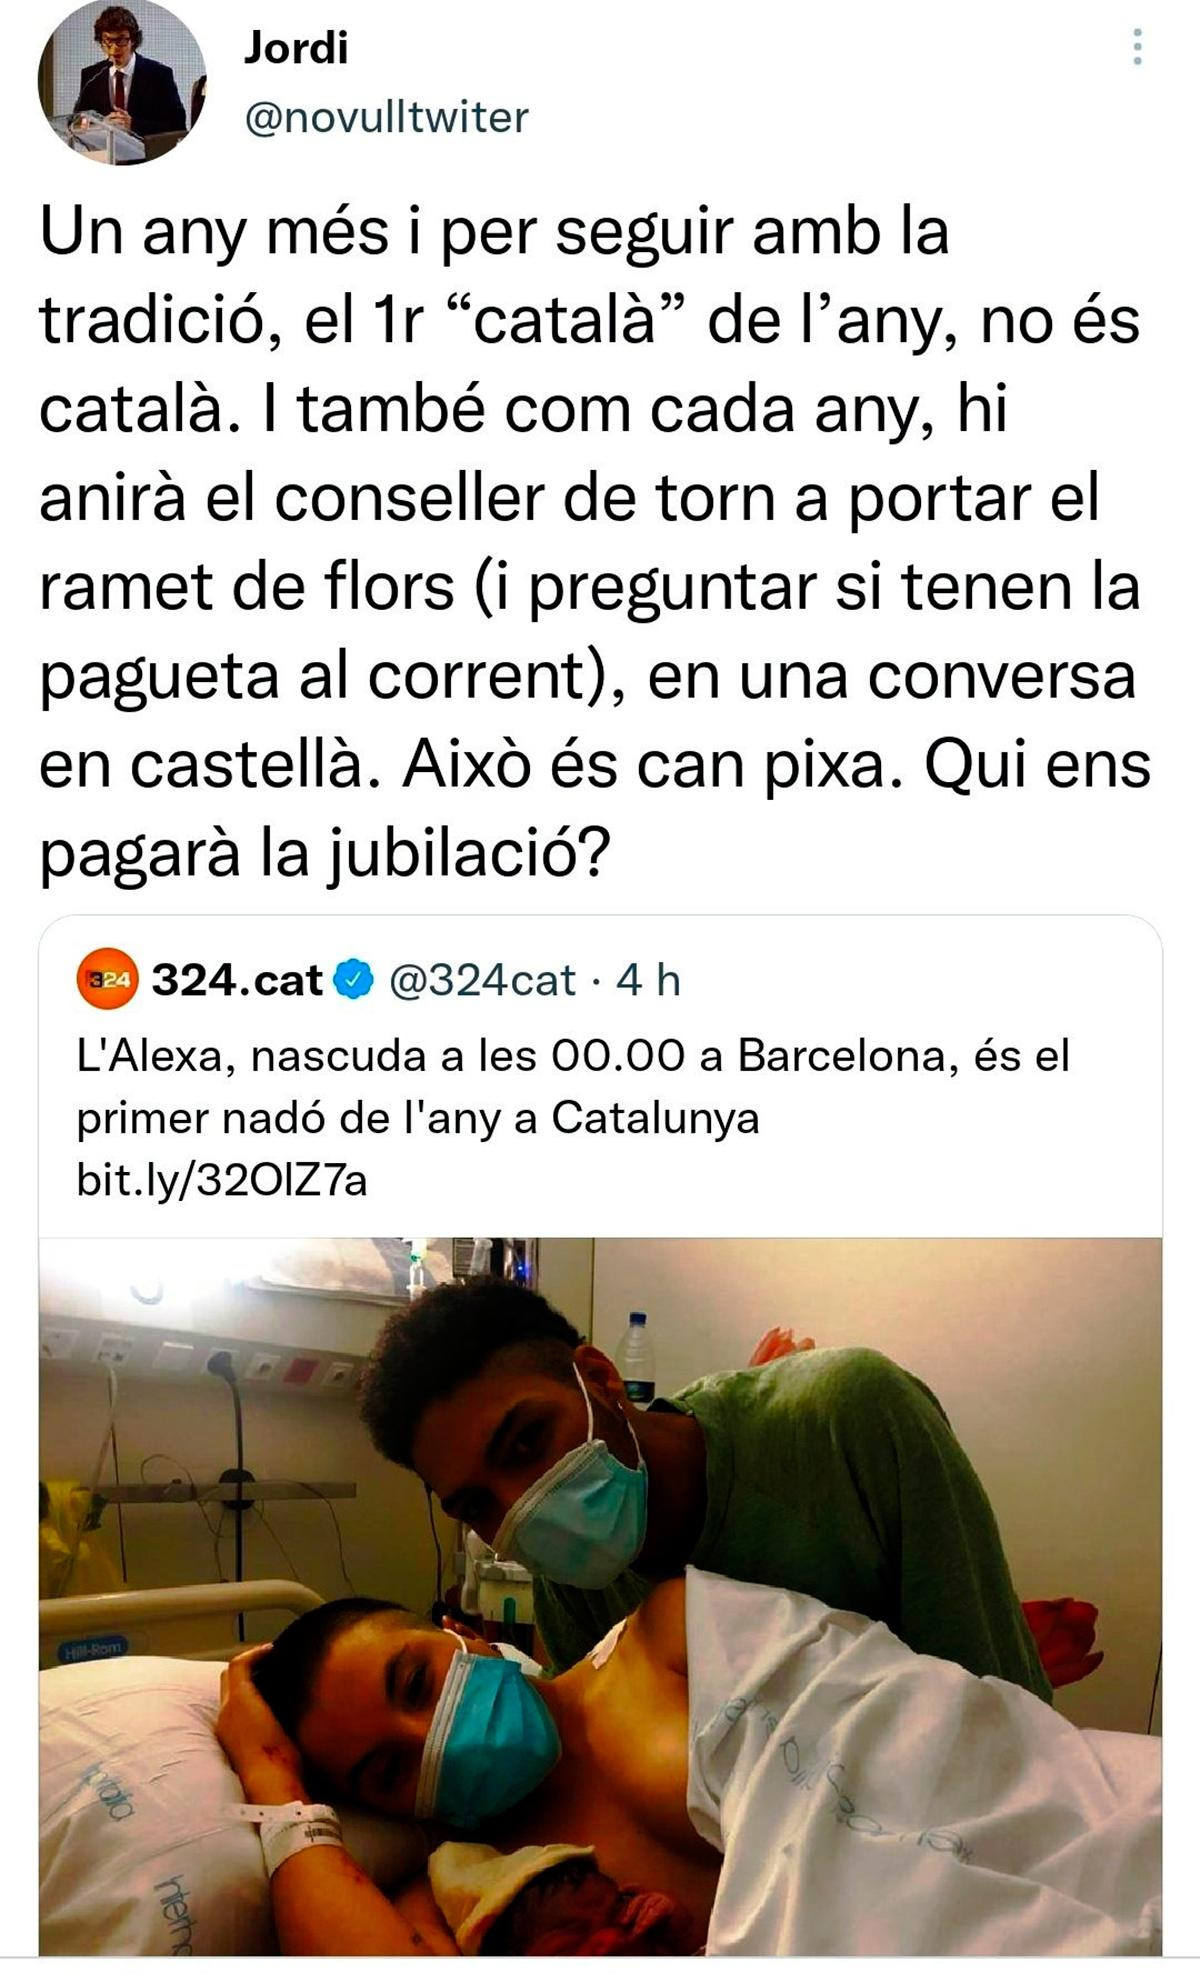 Mensaje racista contra el primer bebé catalán del año